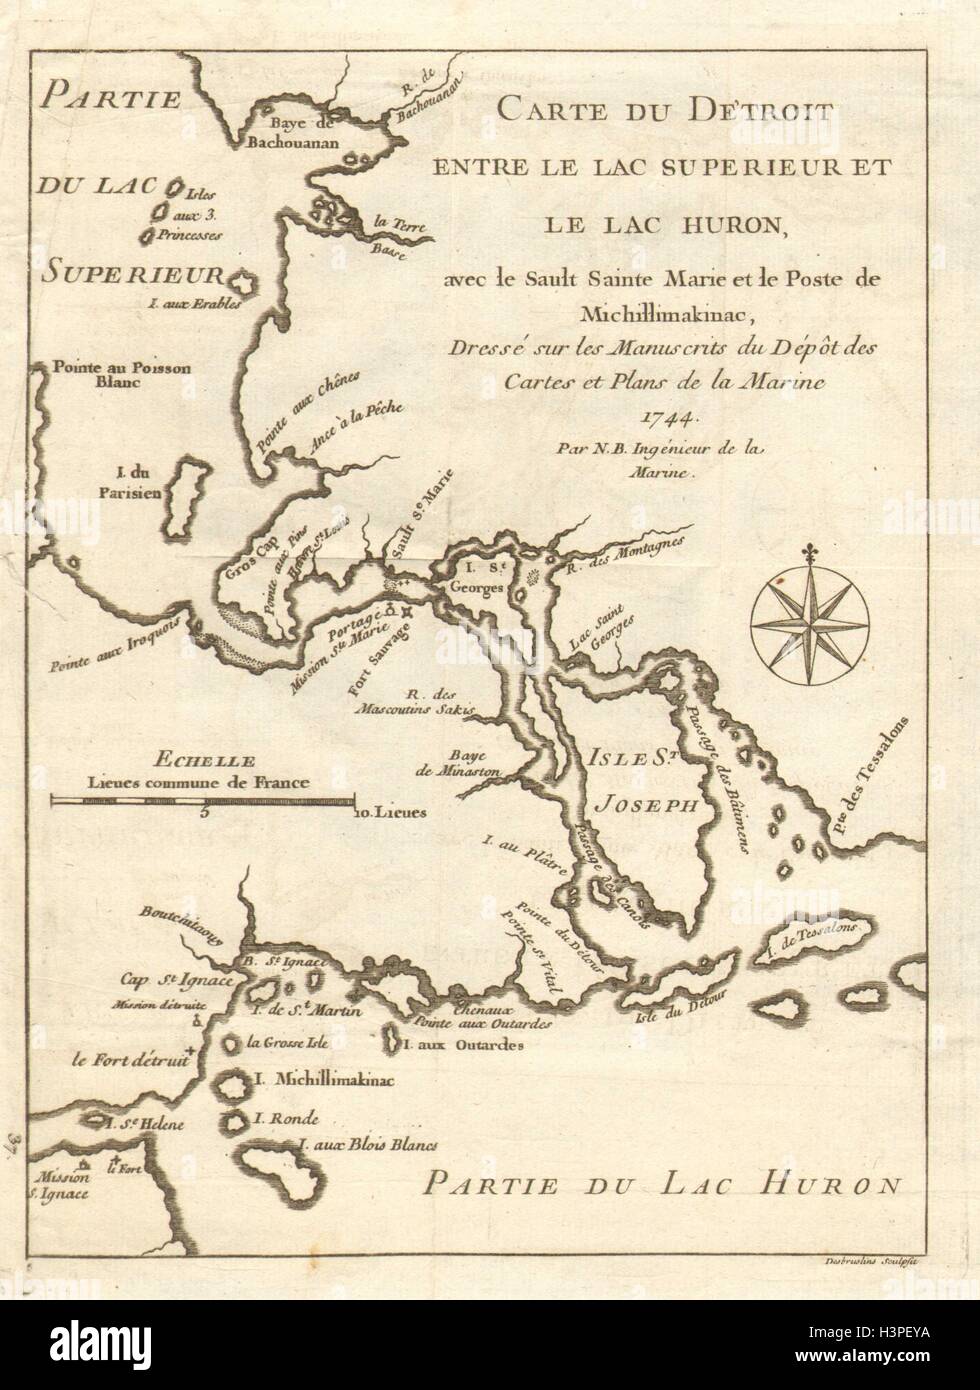 'Carte du detroit entre le Lac Superieur et le Lac Huron'. BELLIN 1744 old map Stock Photo